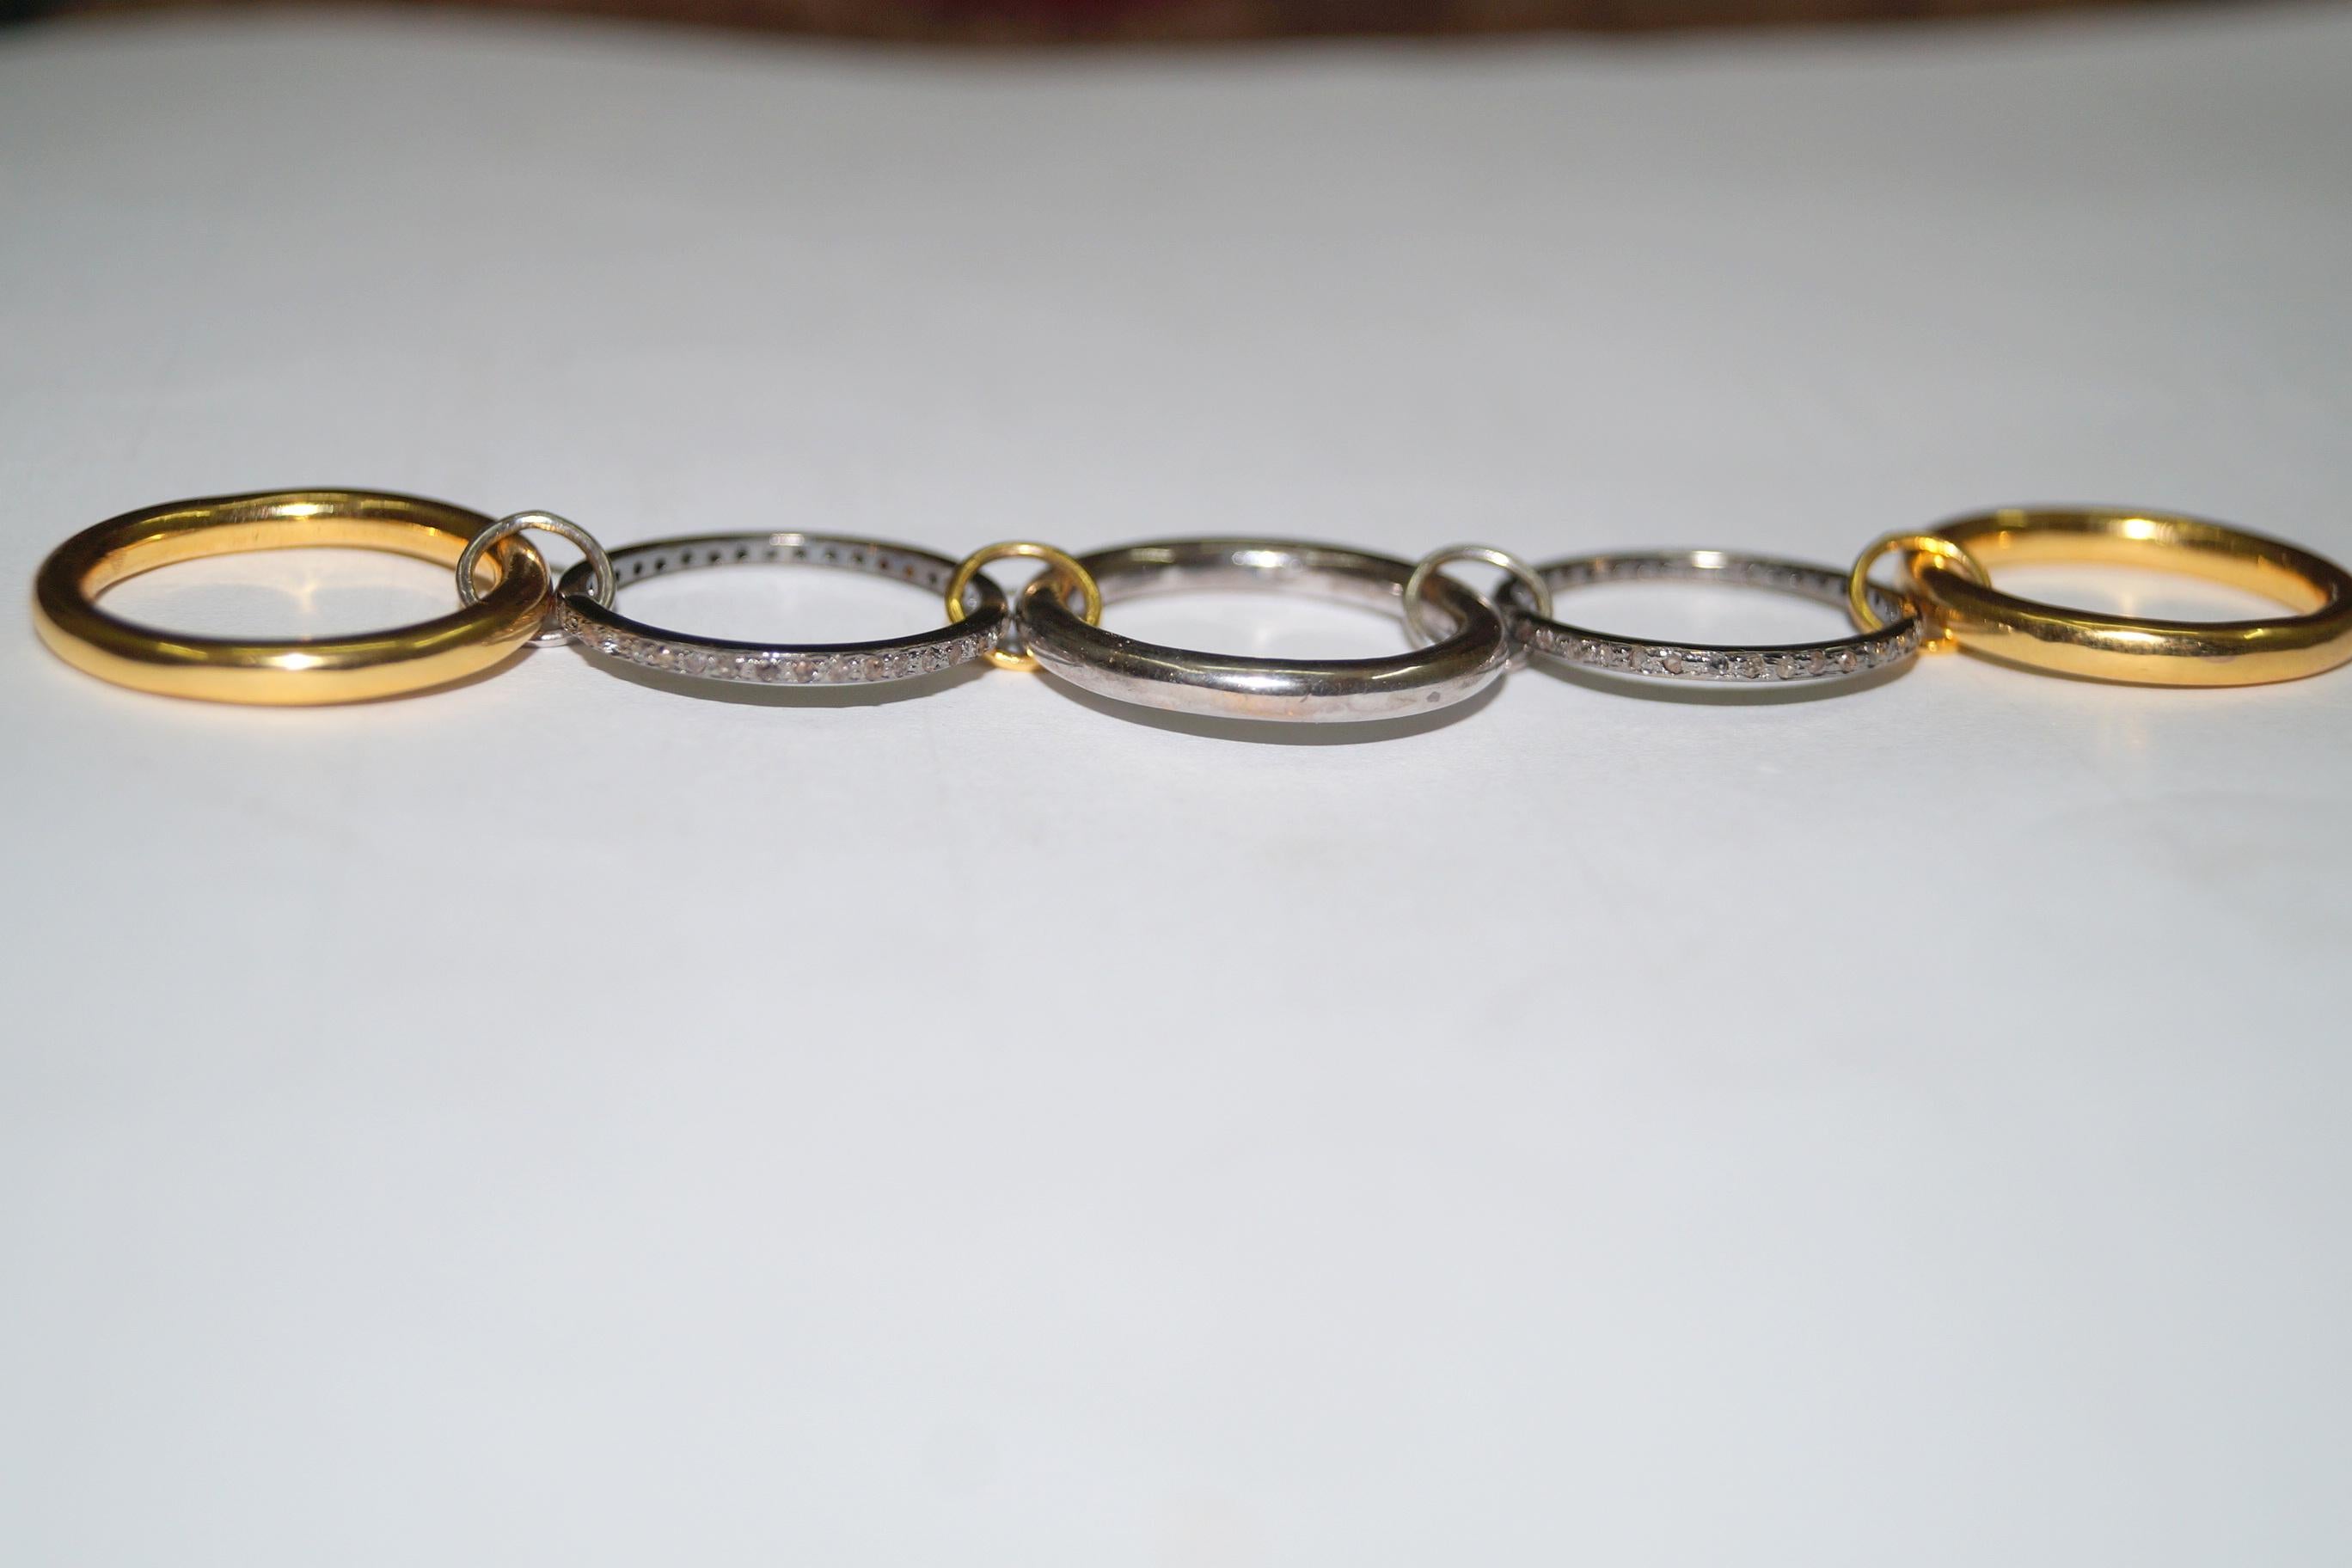 Stapelring Natürliche Pave-Diamanten Sterlingsilber Dual-Ton Stapel von fünf Ringen für Damen oder Herren